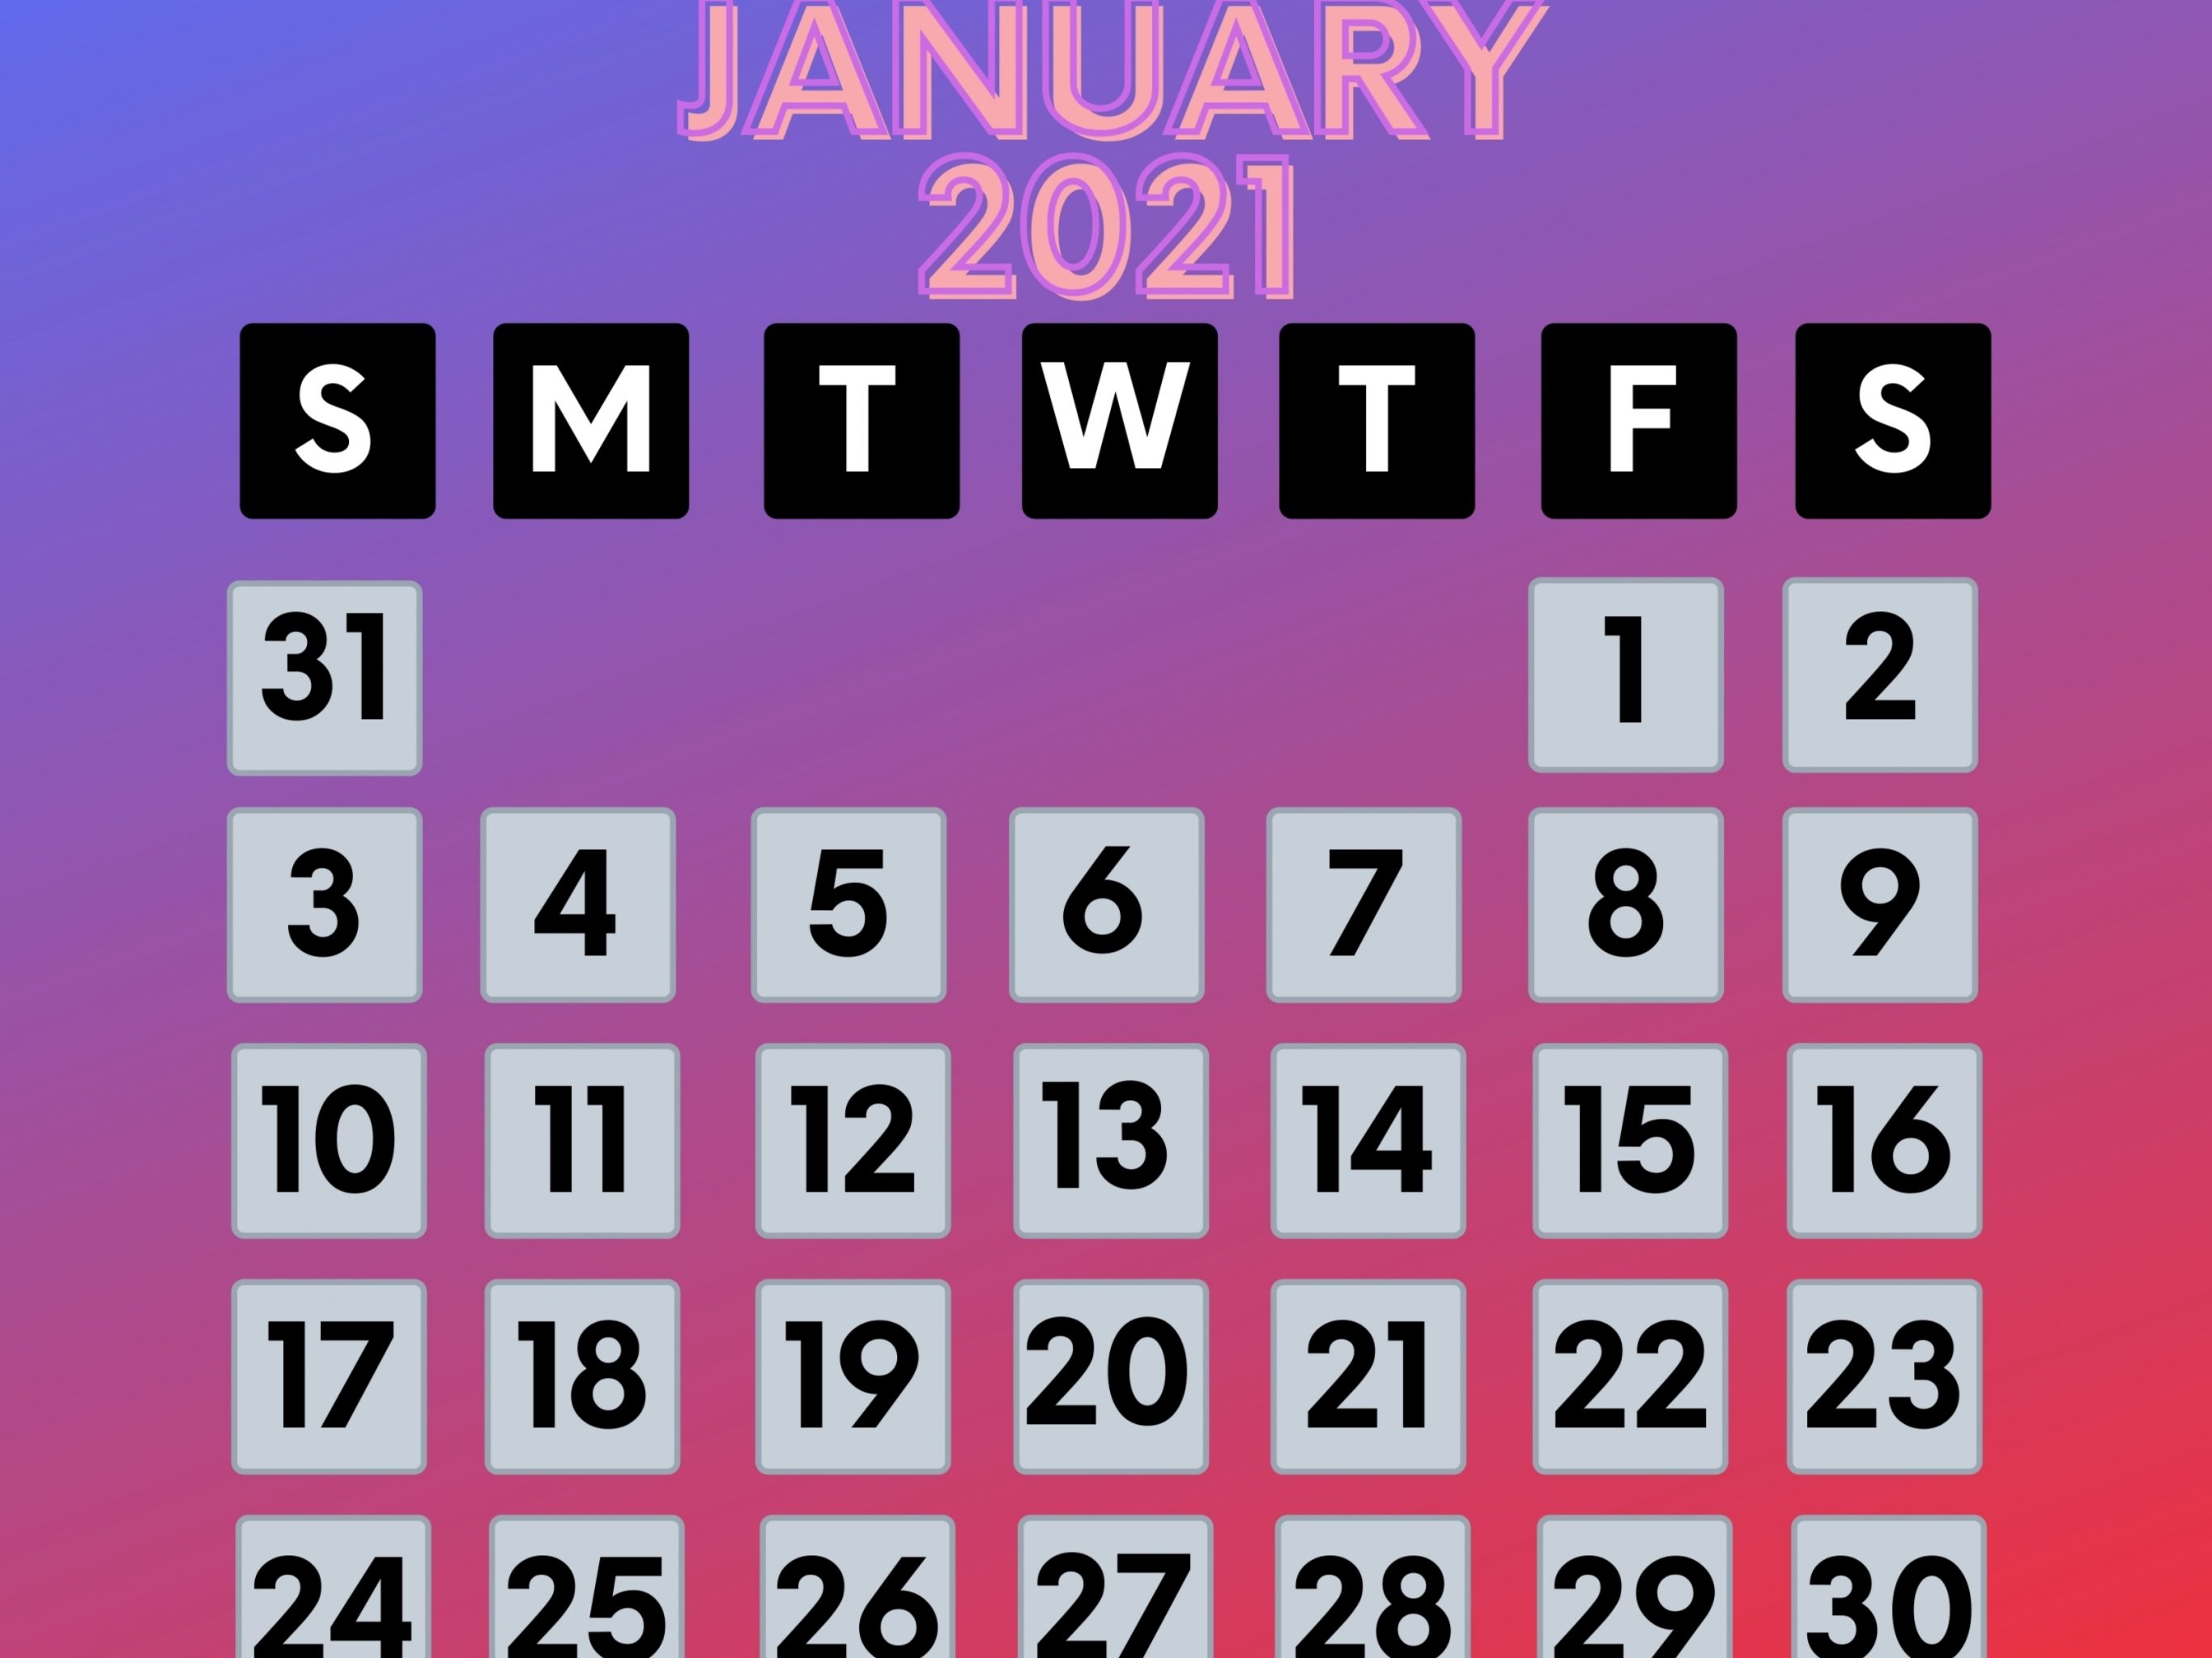 2732x2048 iPad air iPad Pro wallpapers January 2021 Calendar iPad Wallpaper 2732x2048 pixels resolution